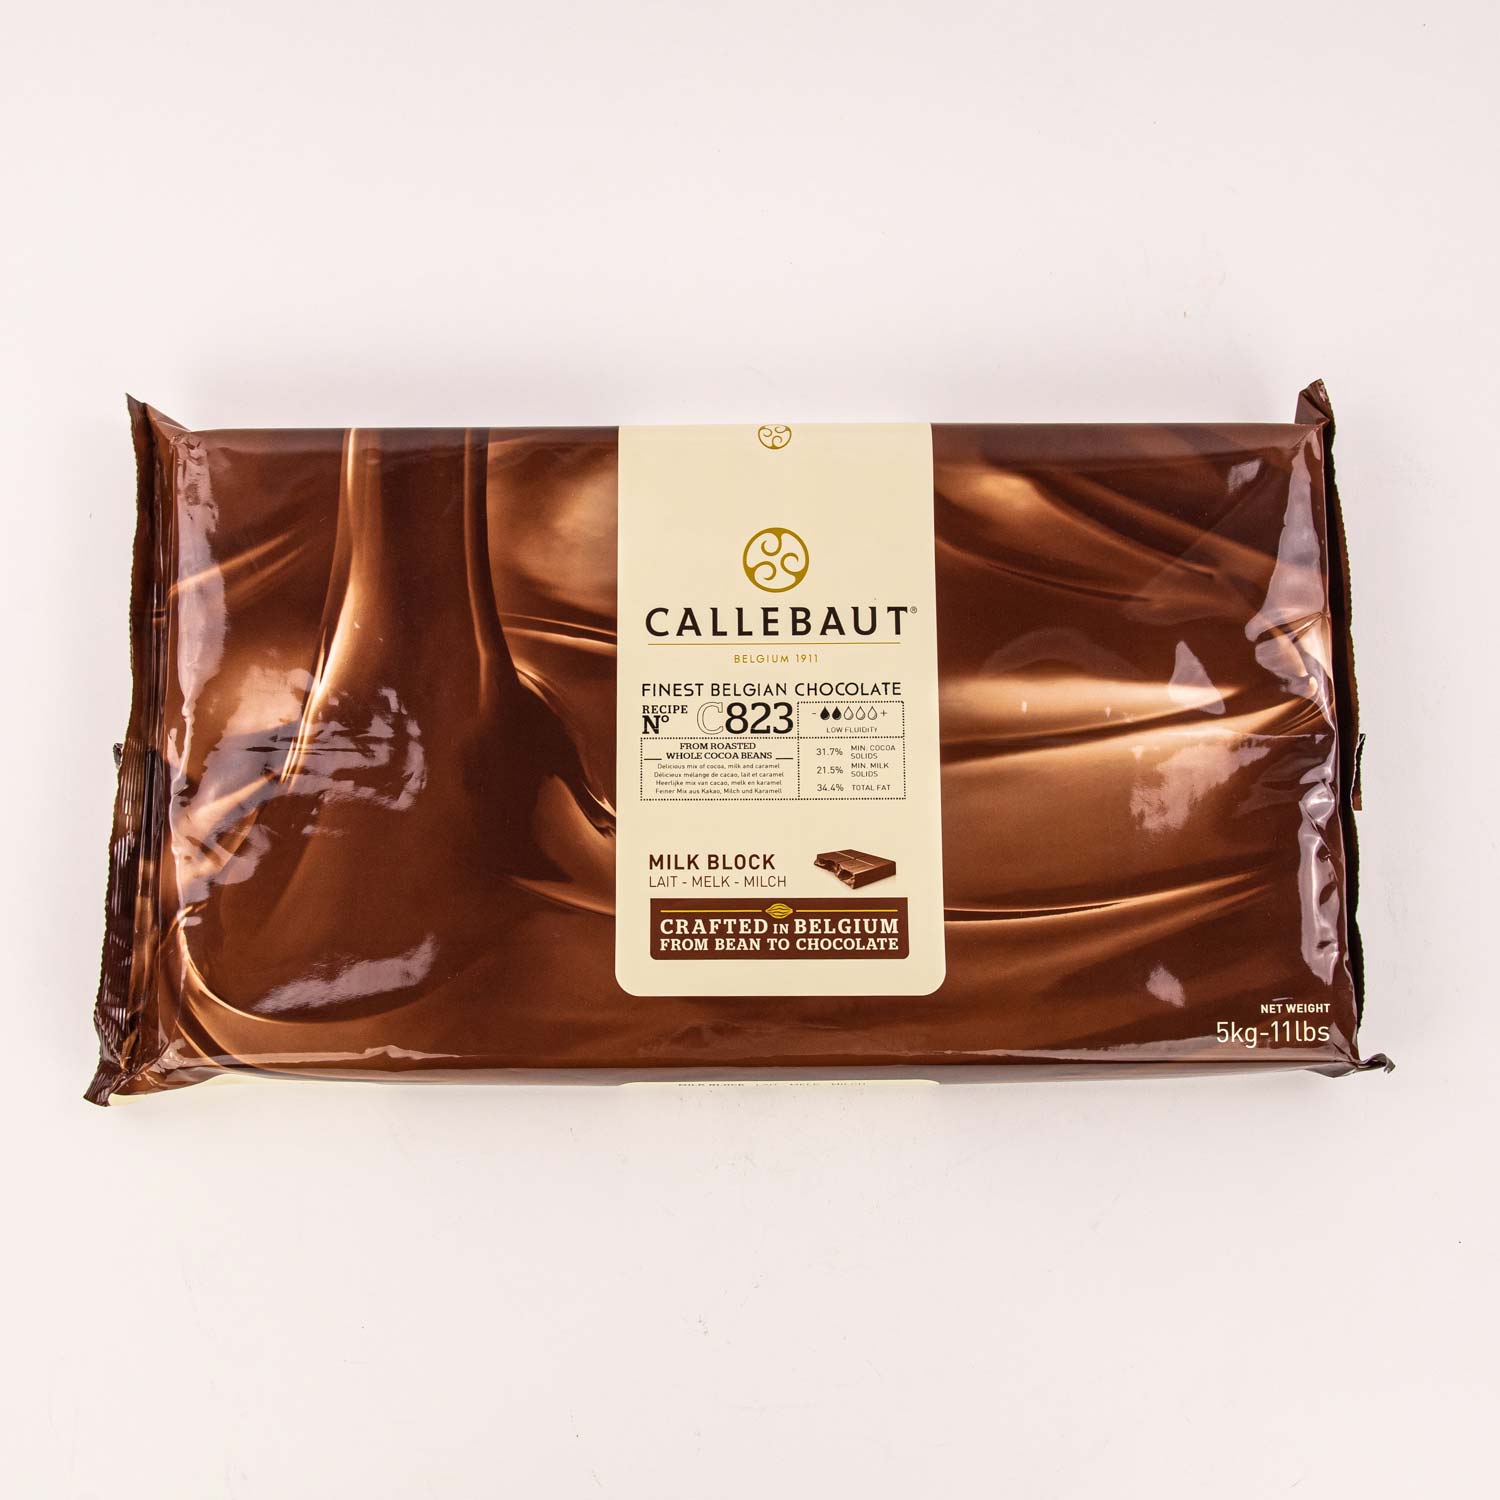 Bâtons boulanger au chocolat foncé 44% x300 - Chocolat et cacao à cuisson